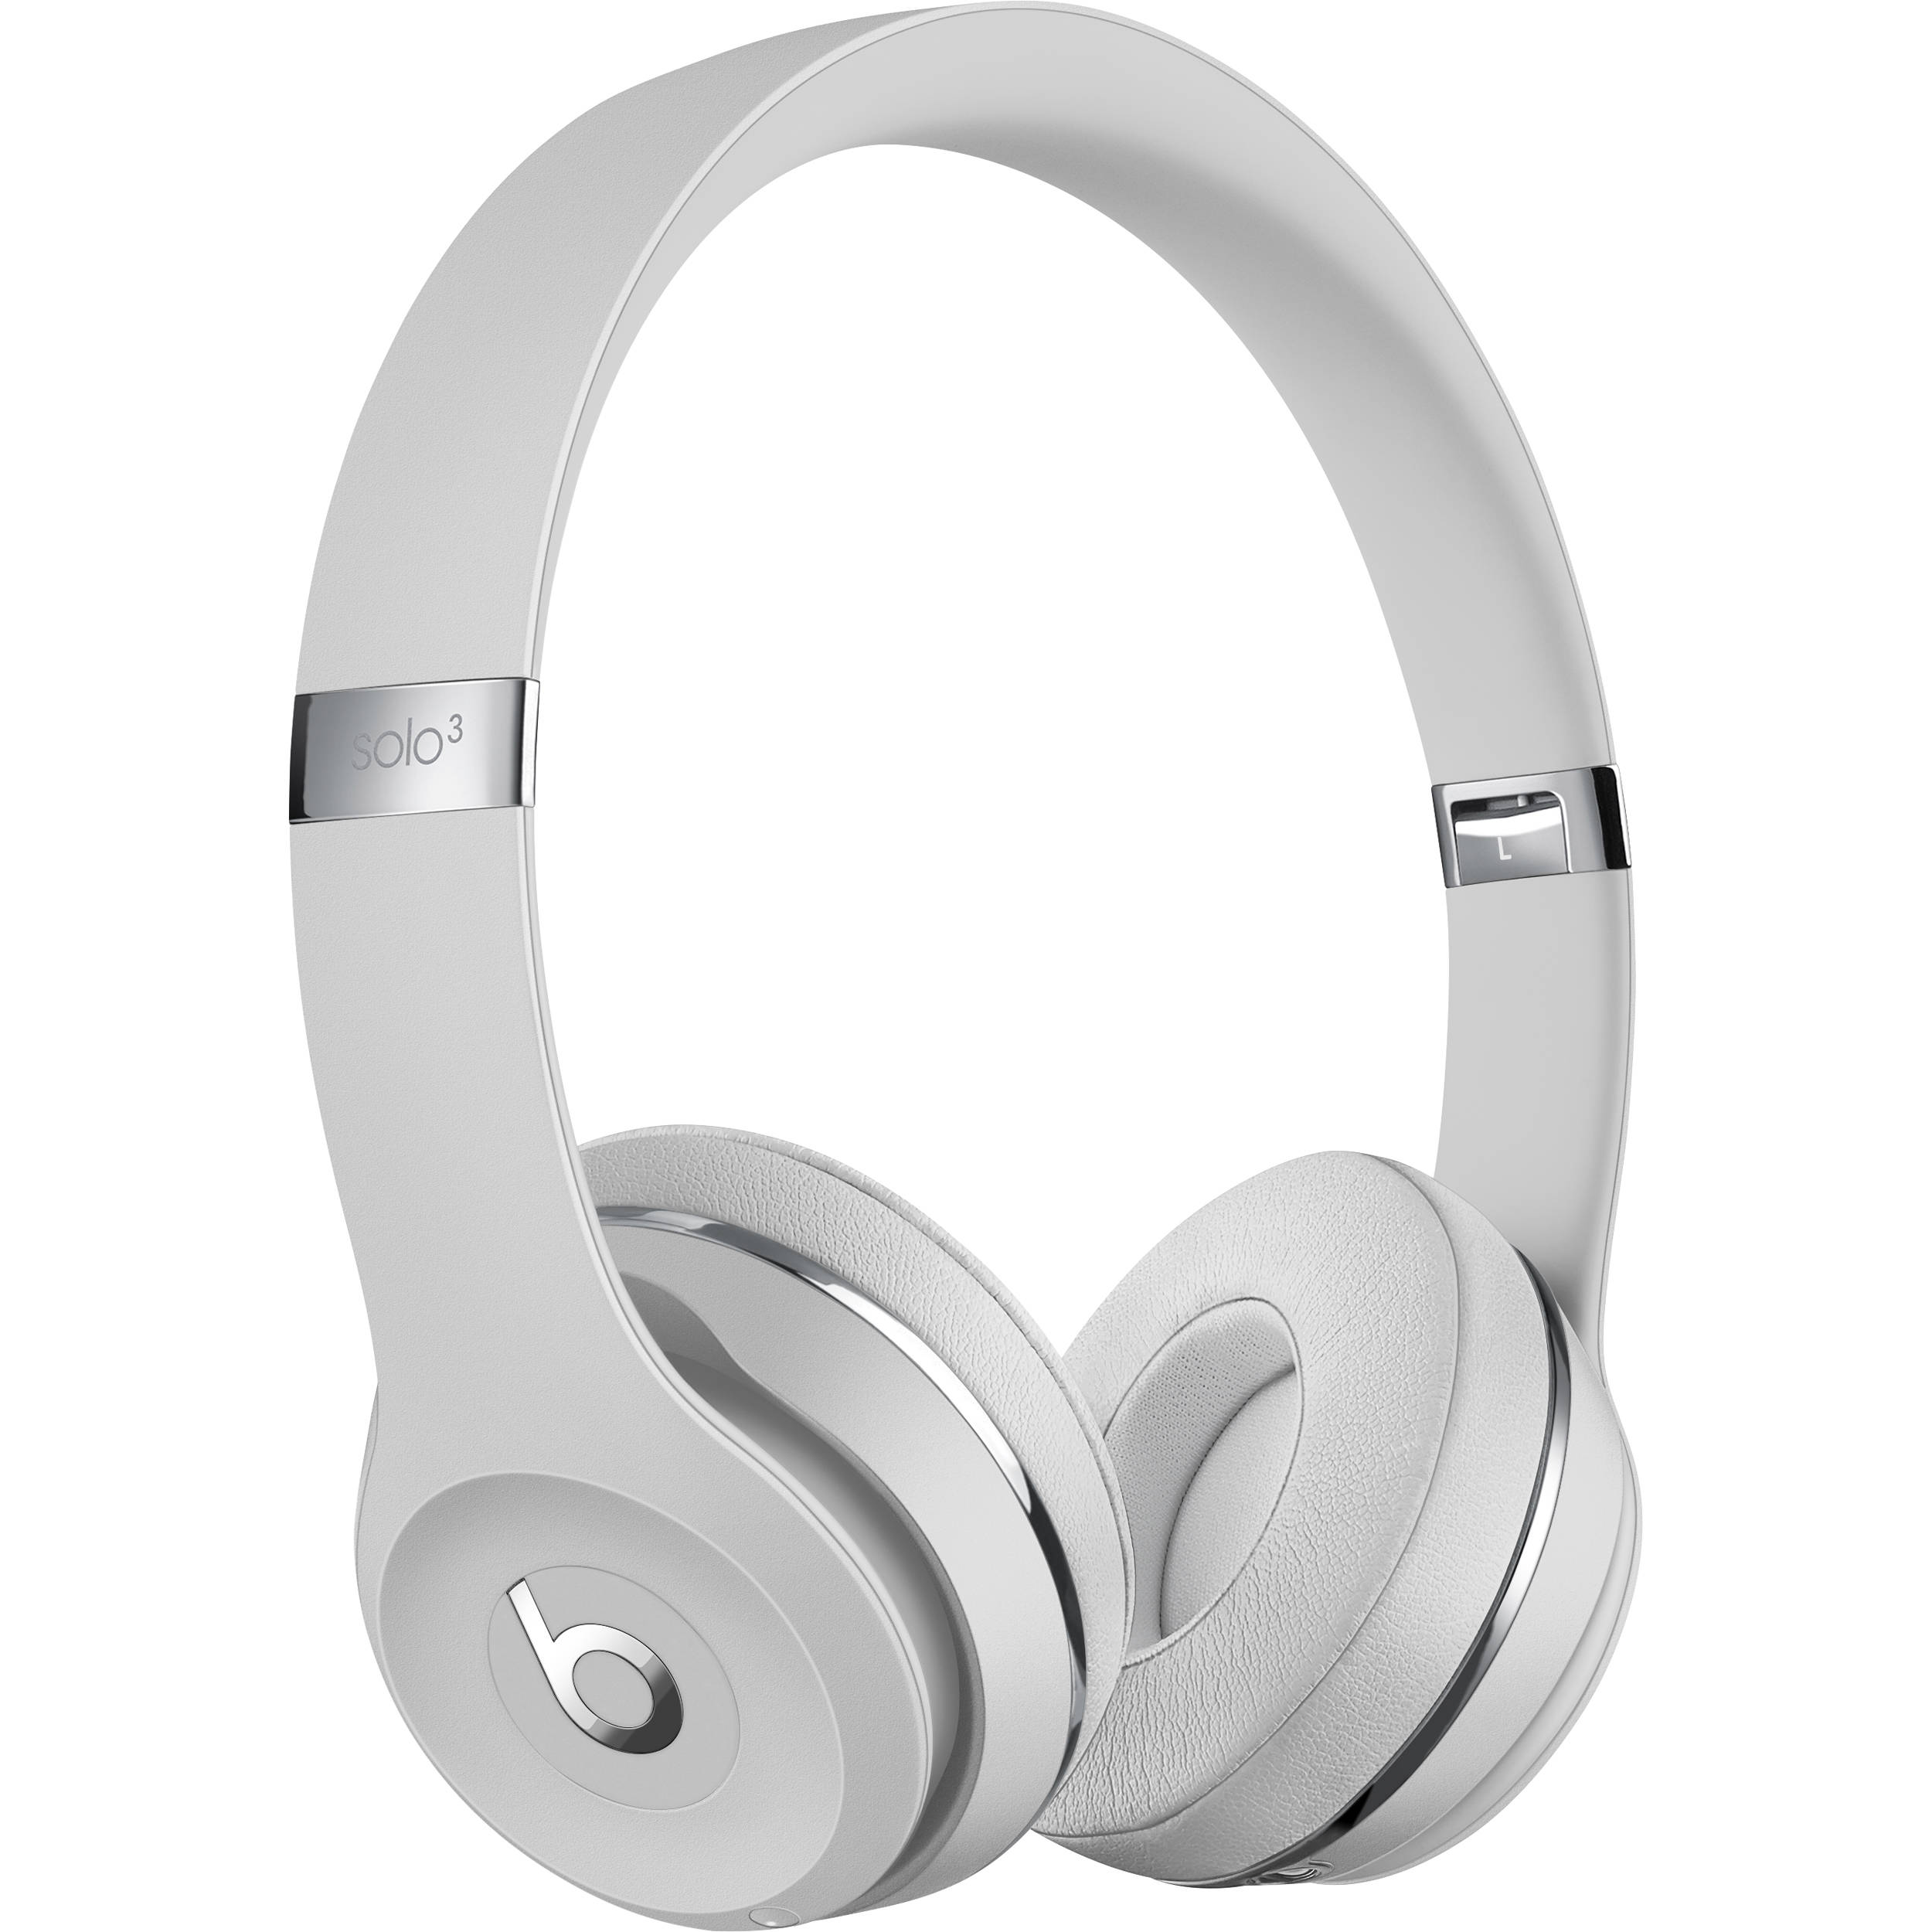 Beats By Dr Dre Beats Solo3 Wireless On Ear Headphones Mx452lla